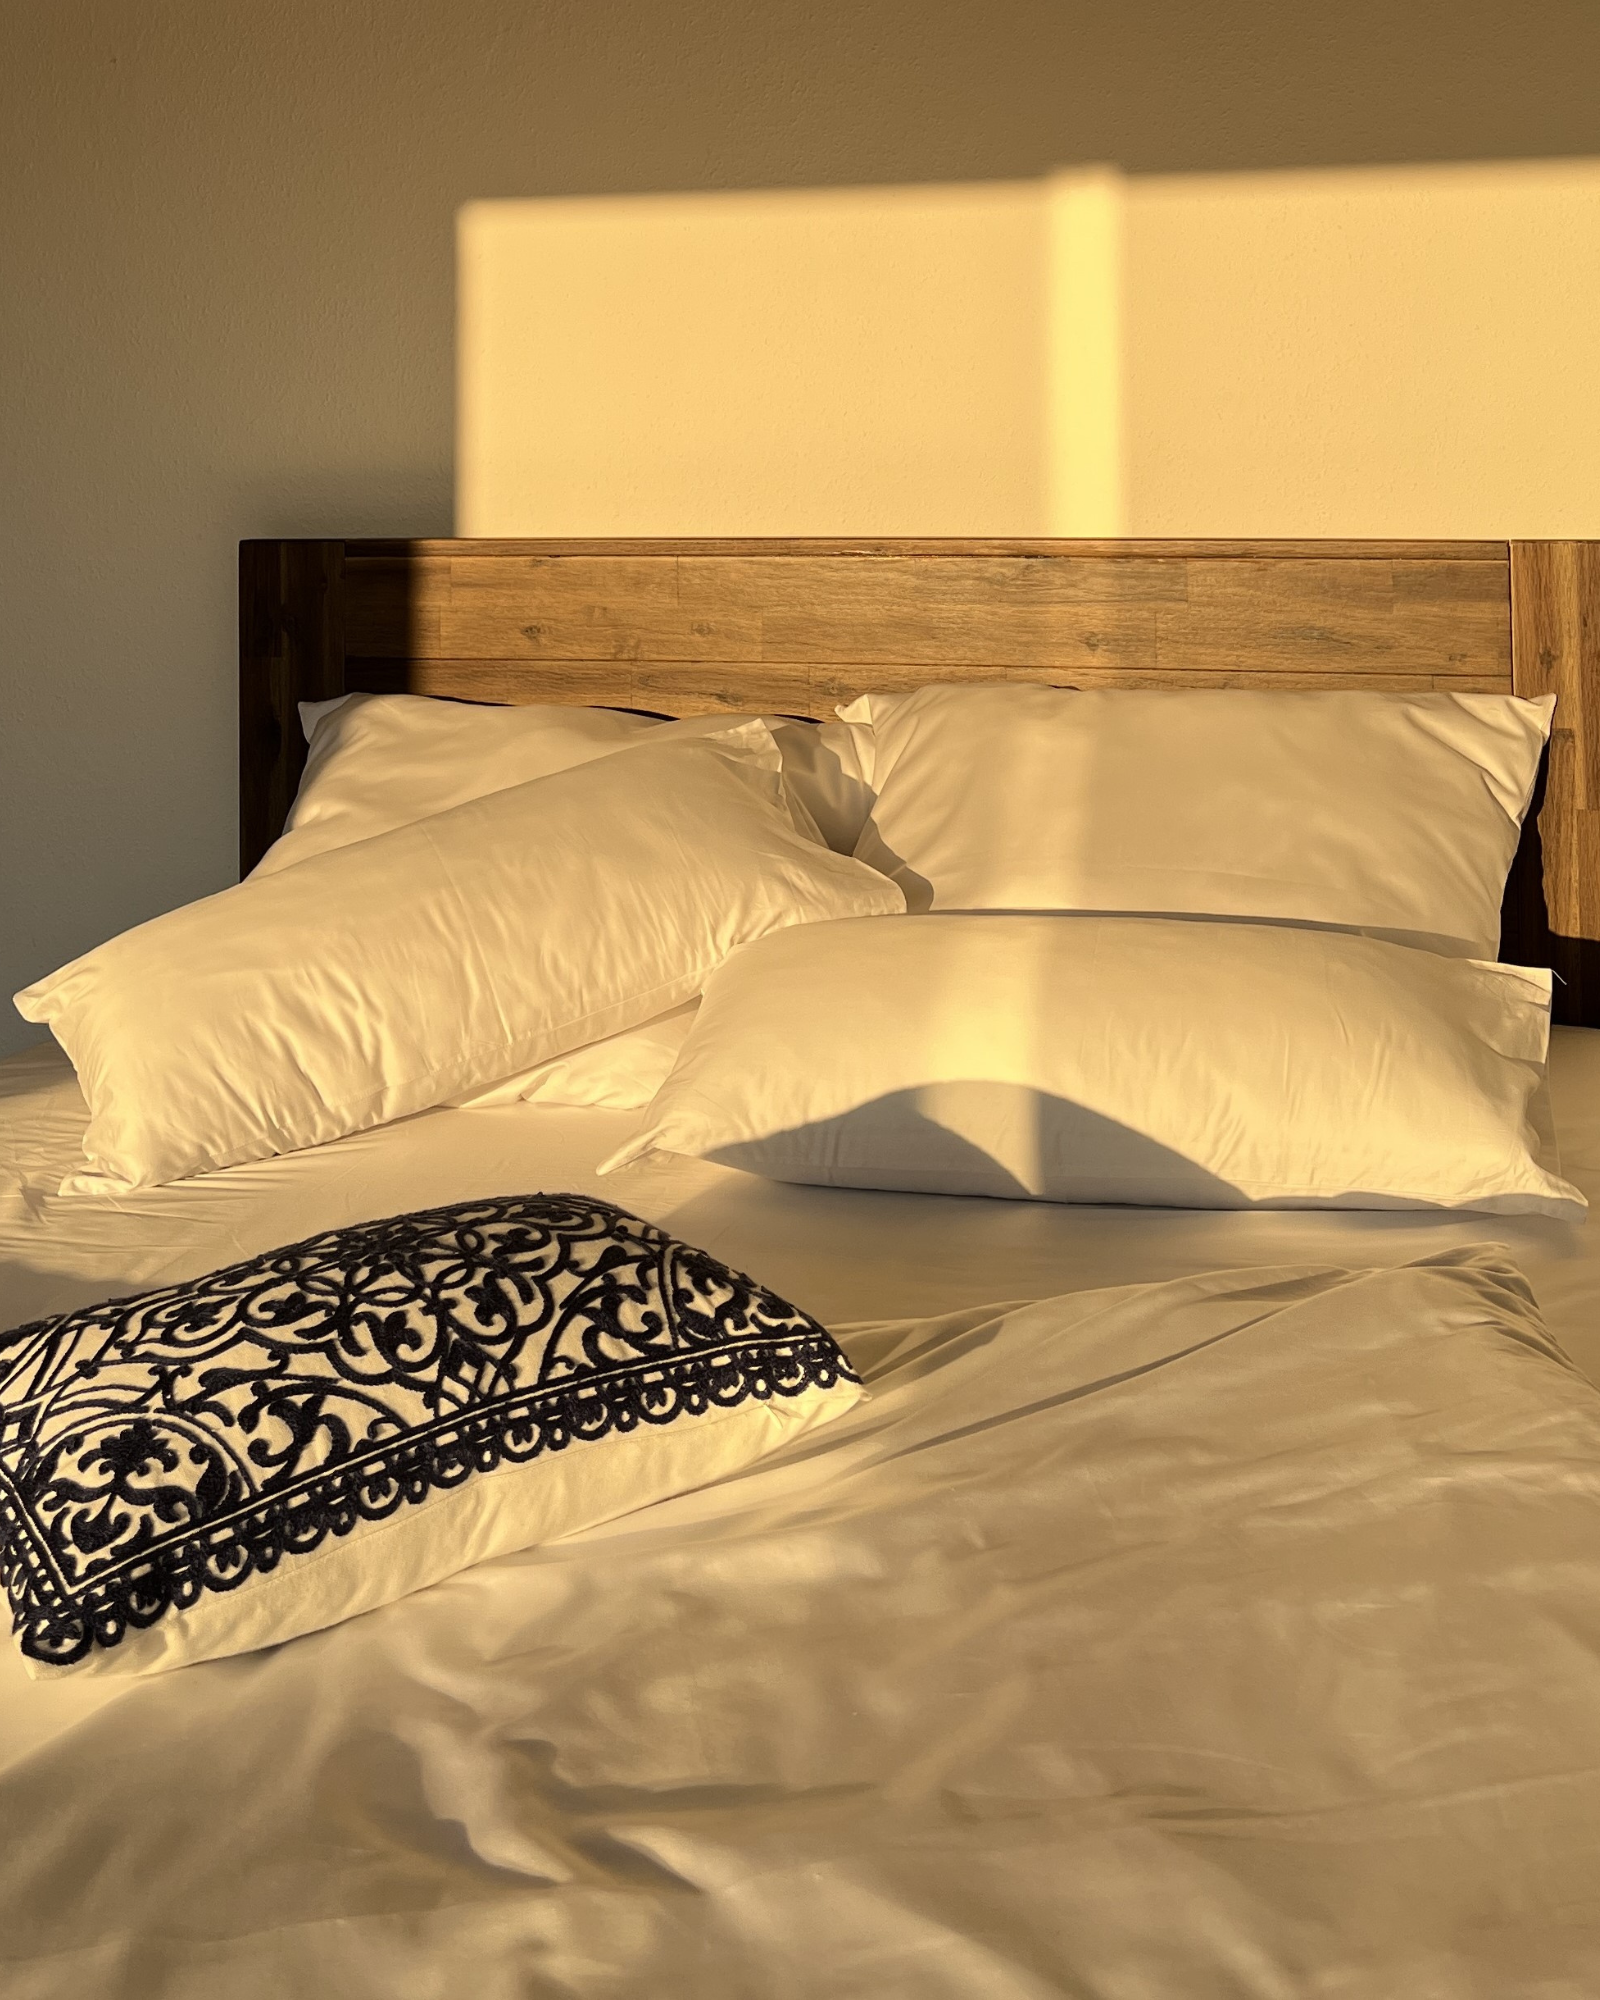 Ein weißes Bett mit Kissen, in gemütlicher Atmosphäre und Sonnenlicht.